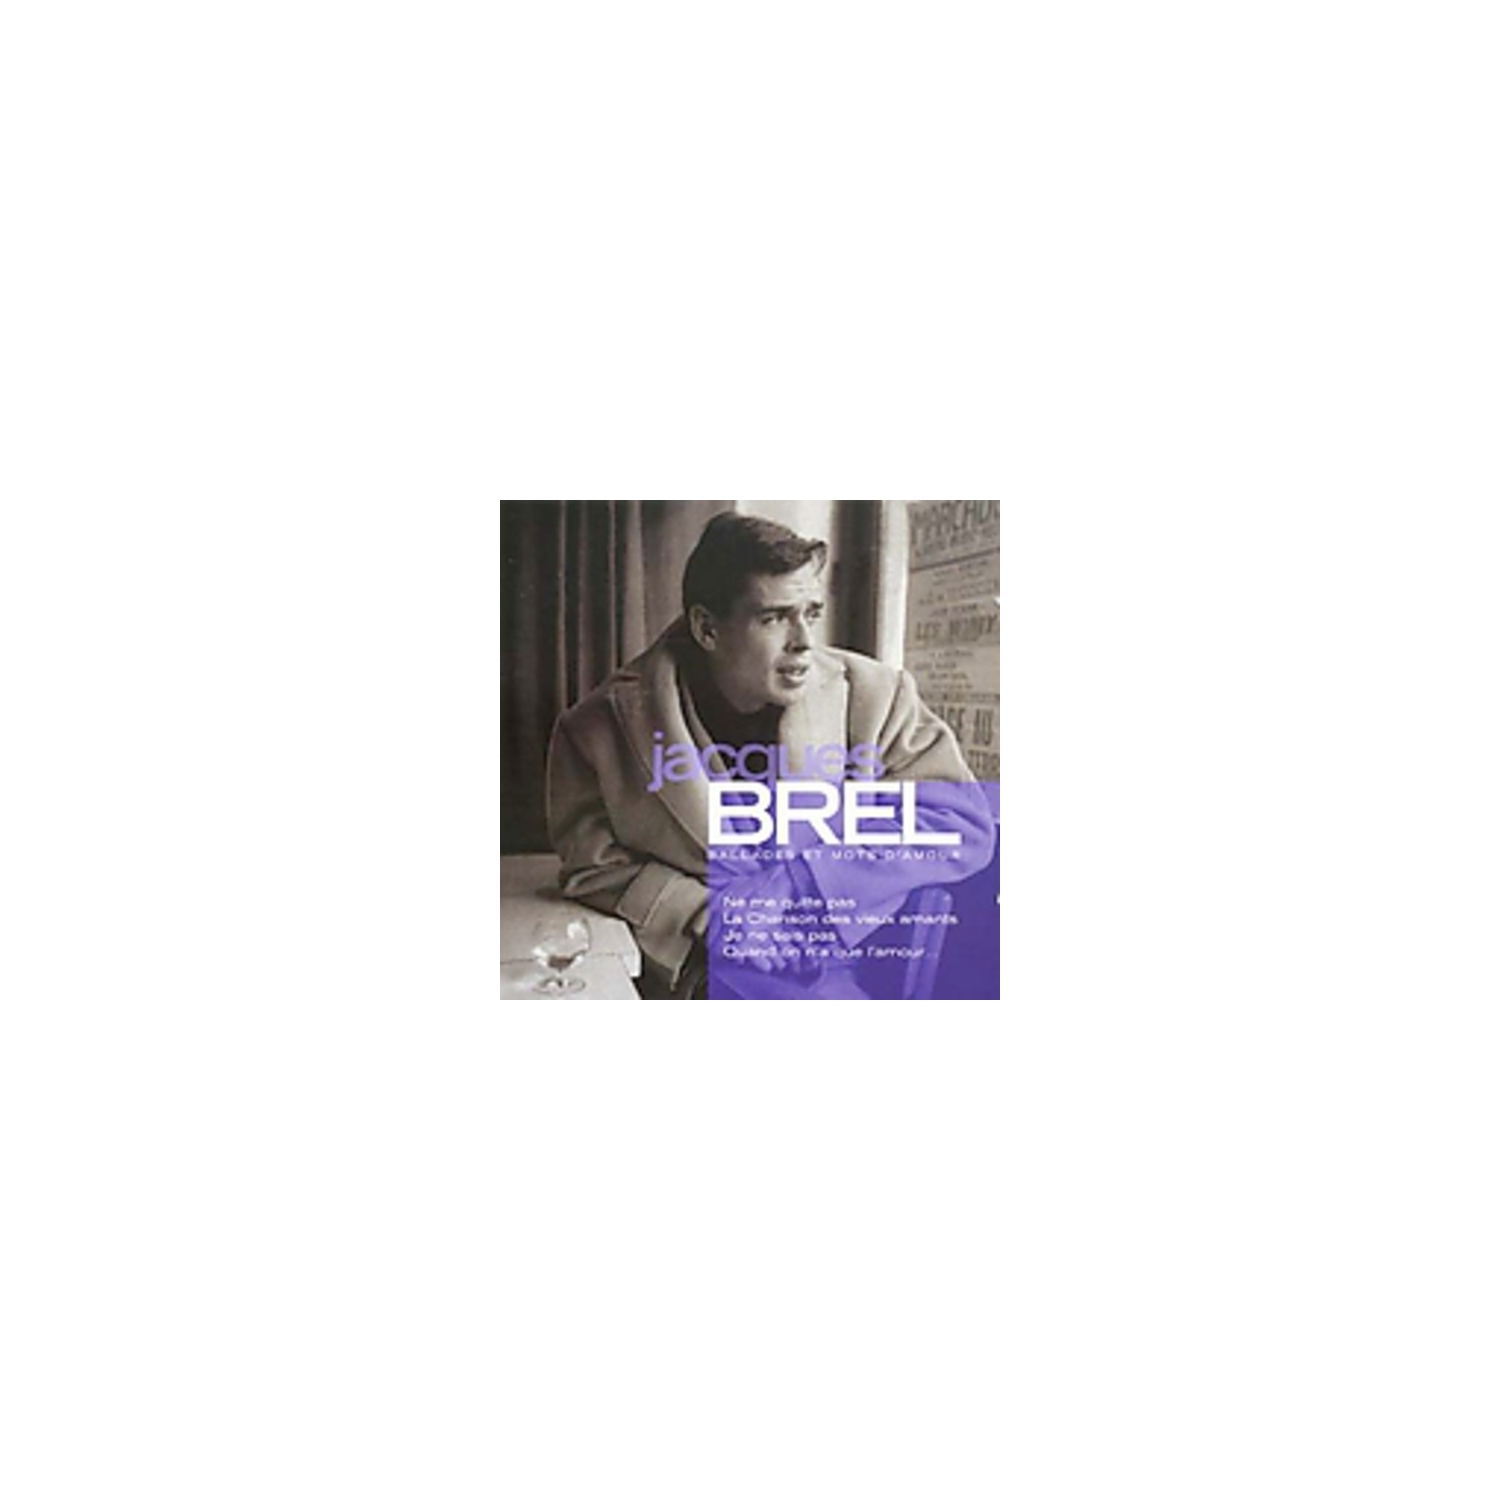 Jacques Brel - Ballades Et Mots D'amour [COMPACT DISCS] France - Import